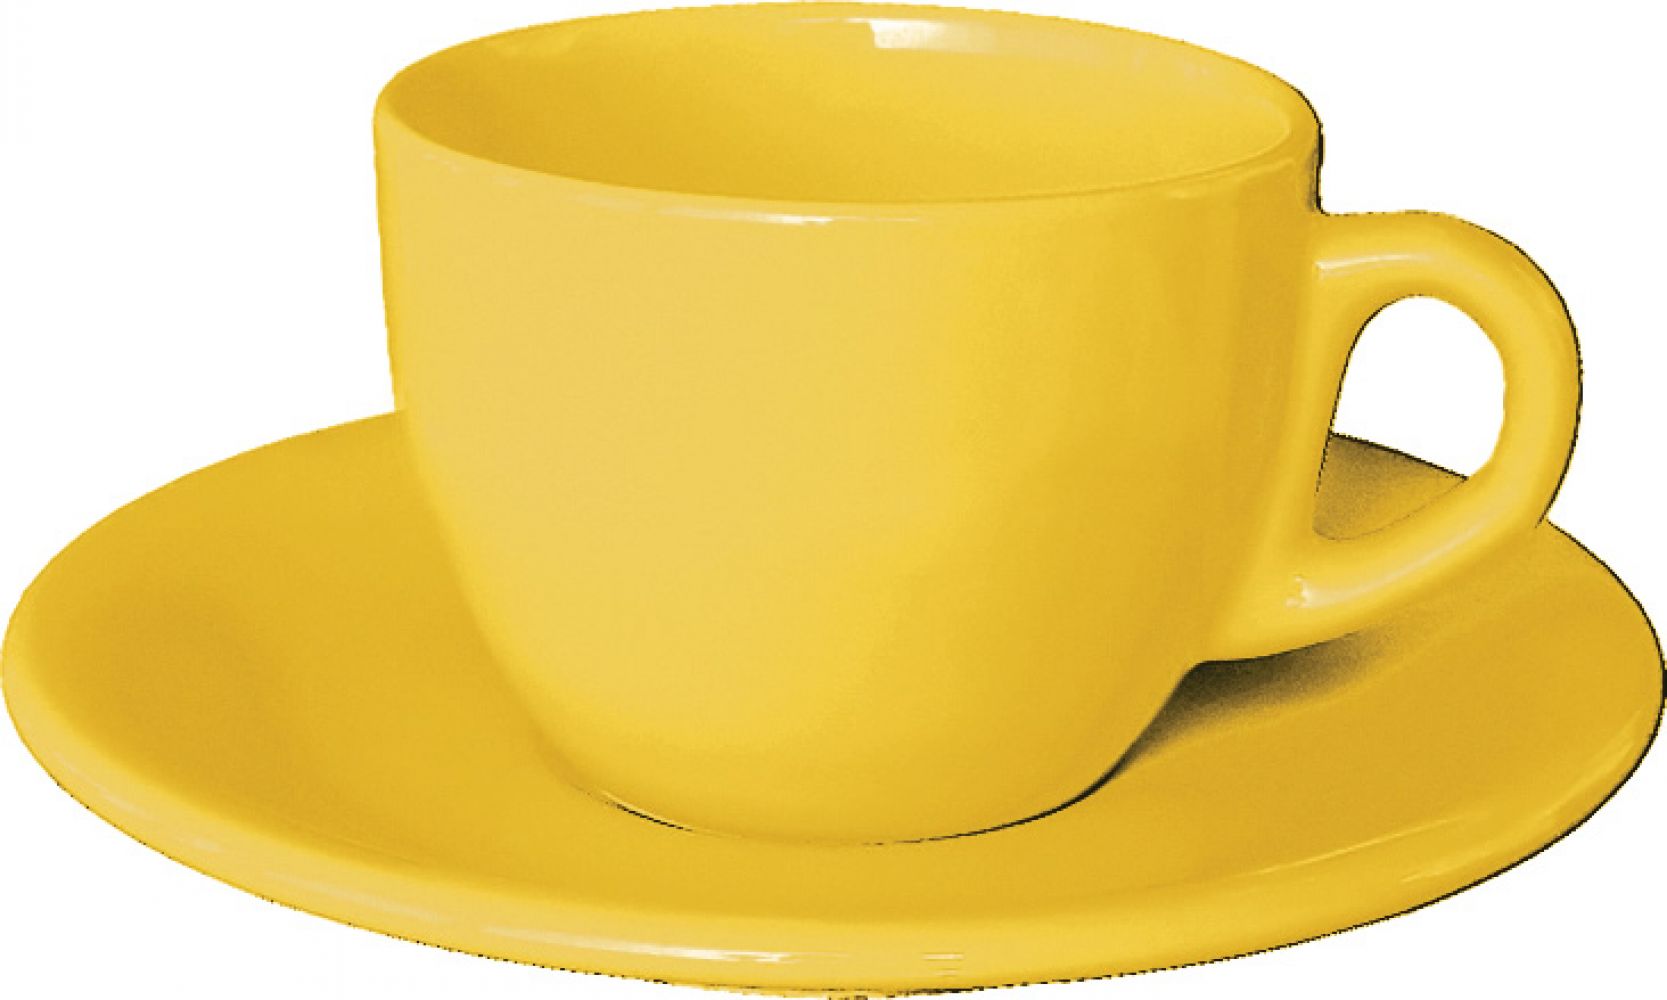 Картинки cup. Желтая чашка. Посуда чашка. Чашка для детей. Чашка для дошкольников.